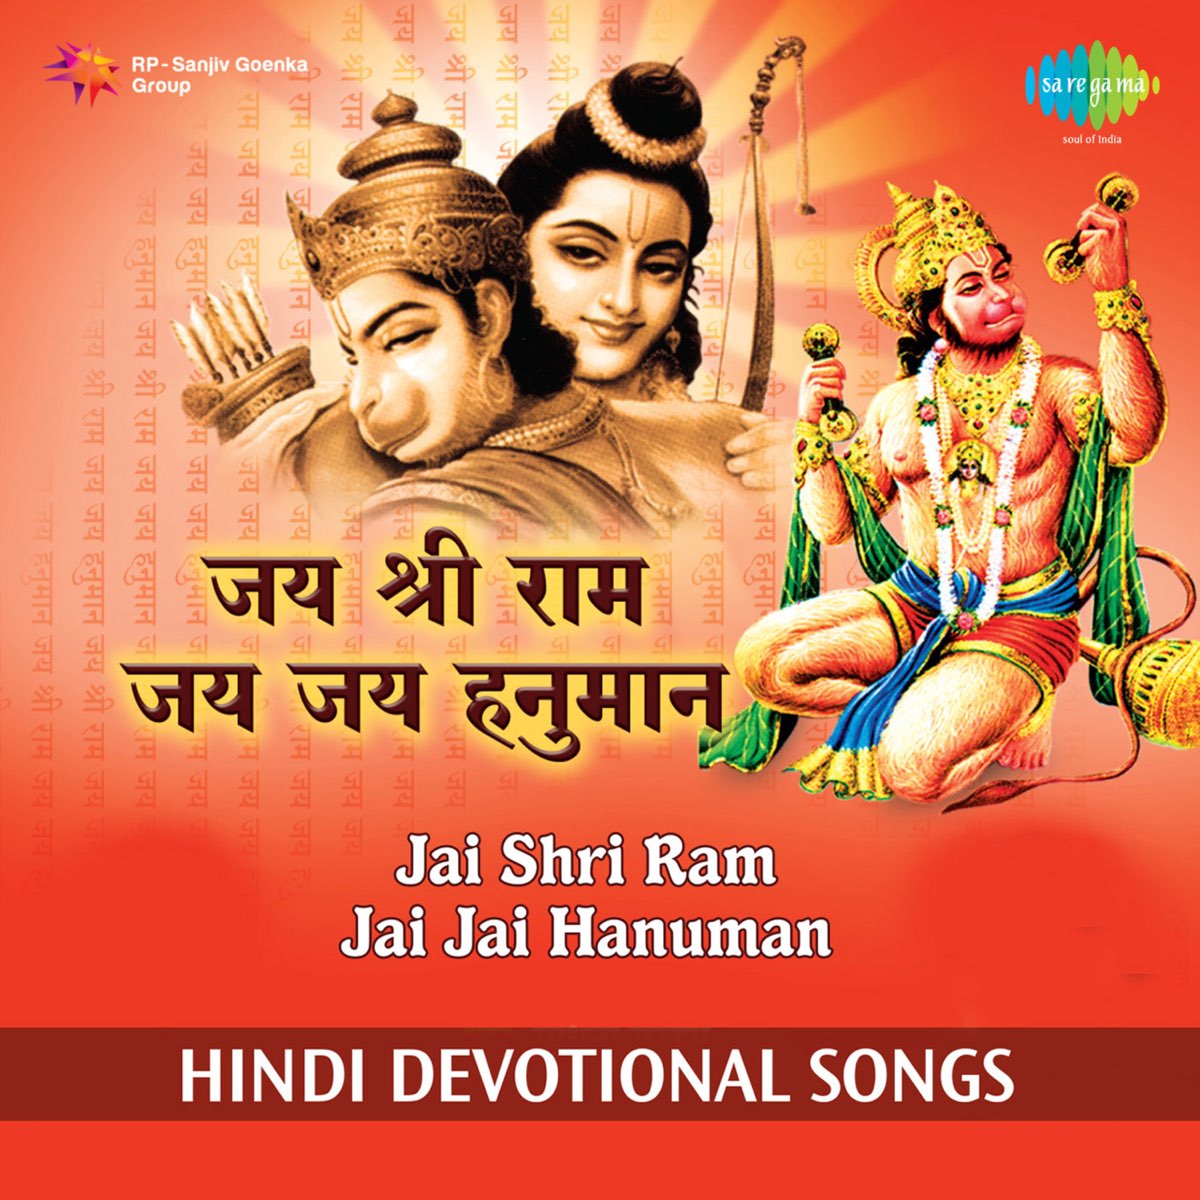 Jai Shri Ram Jai Jai Hanuman by Sadhana Sargam & Vijay Shankar on Apple  Music